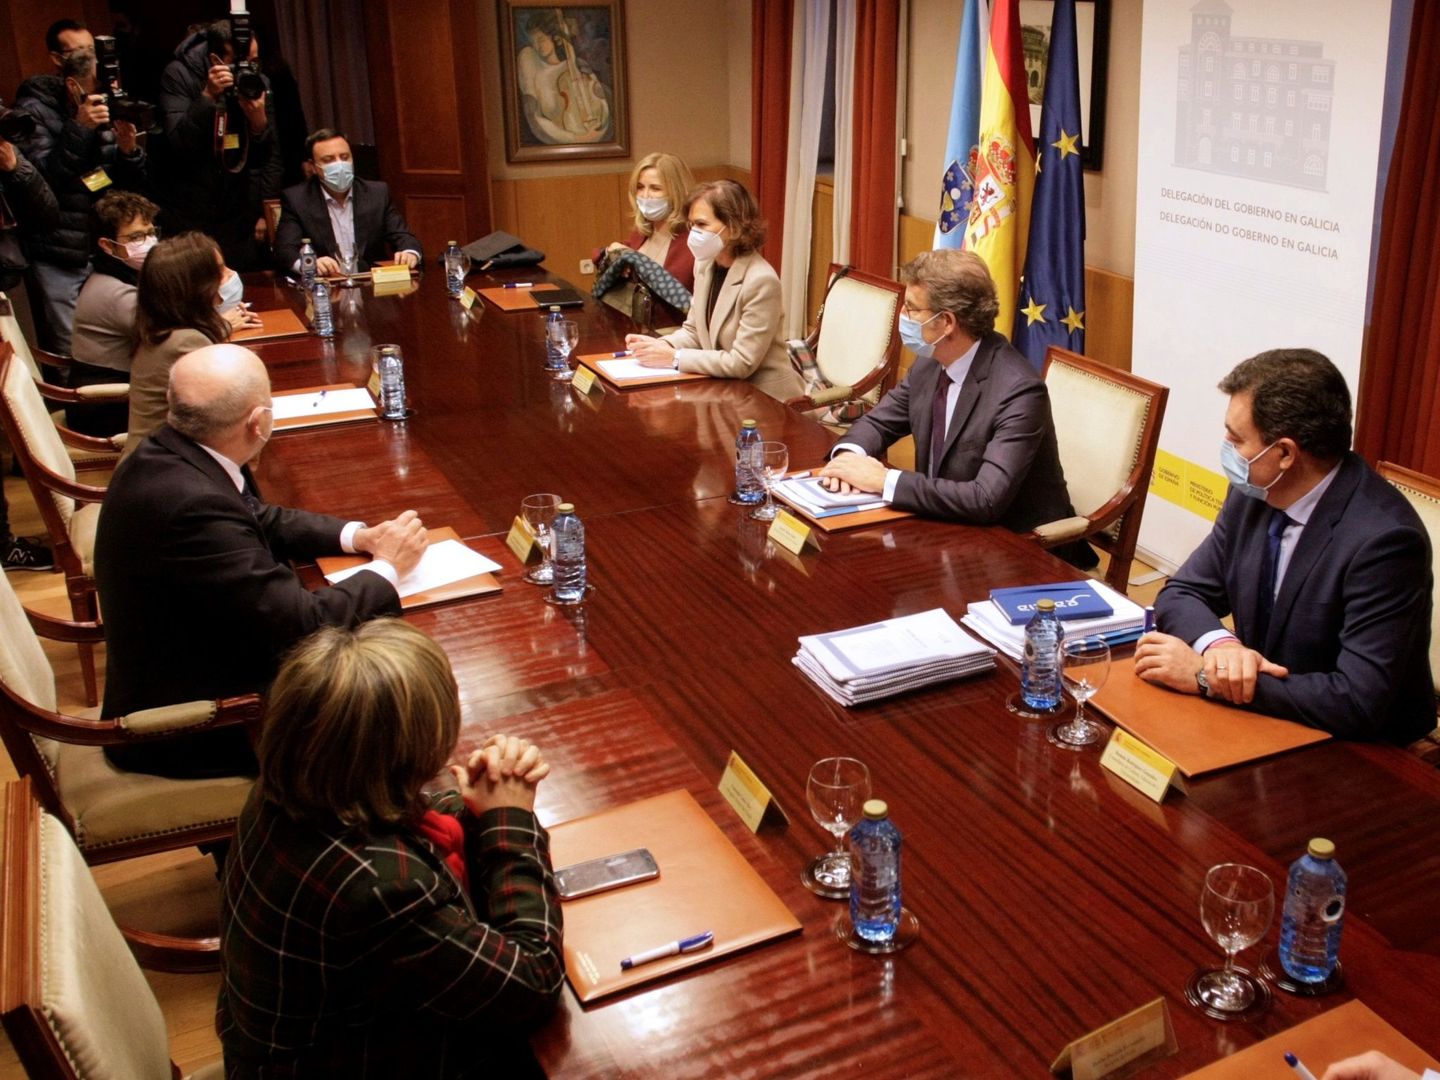  La vicepresidenta primera, Carmen Calvo (c), se reúne con el delegado del Gobierno de Galicia, Javier Losada; el presidente de la Xunta, Alberto Núñez Feijóo (2d), entre otros. (EFE) 